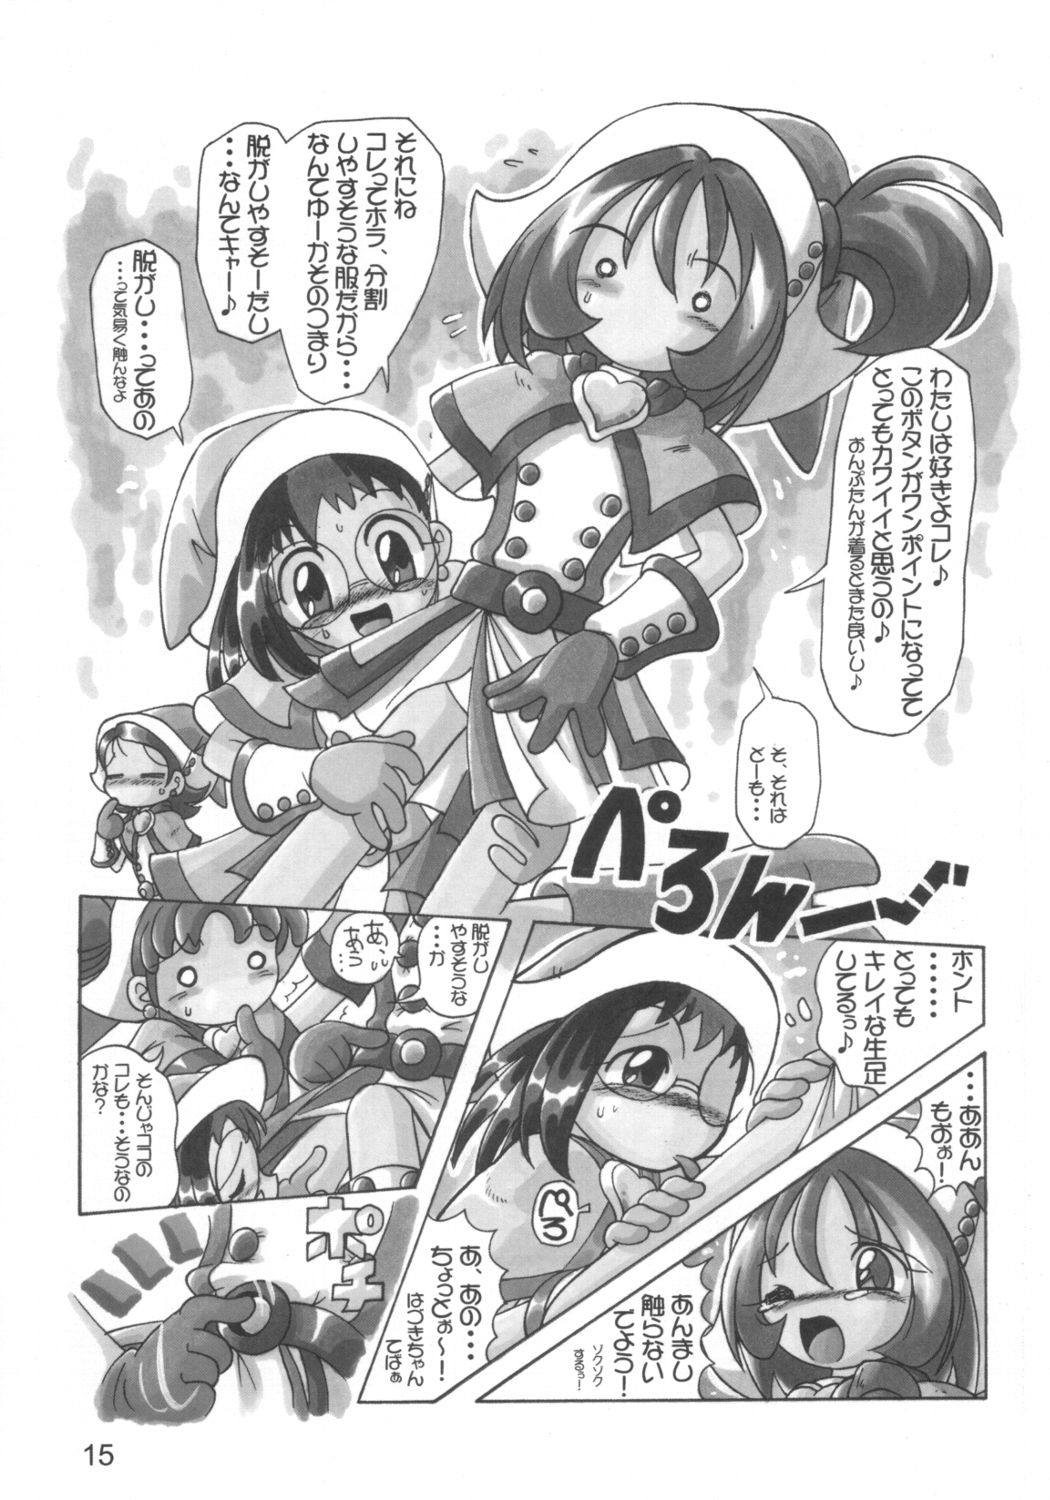 [RPG Company 2 (Various)] Lolita-Spirits Vol. 6 (Various) page 14 full